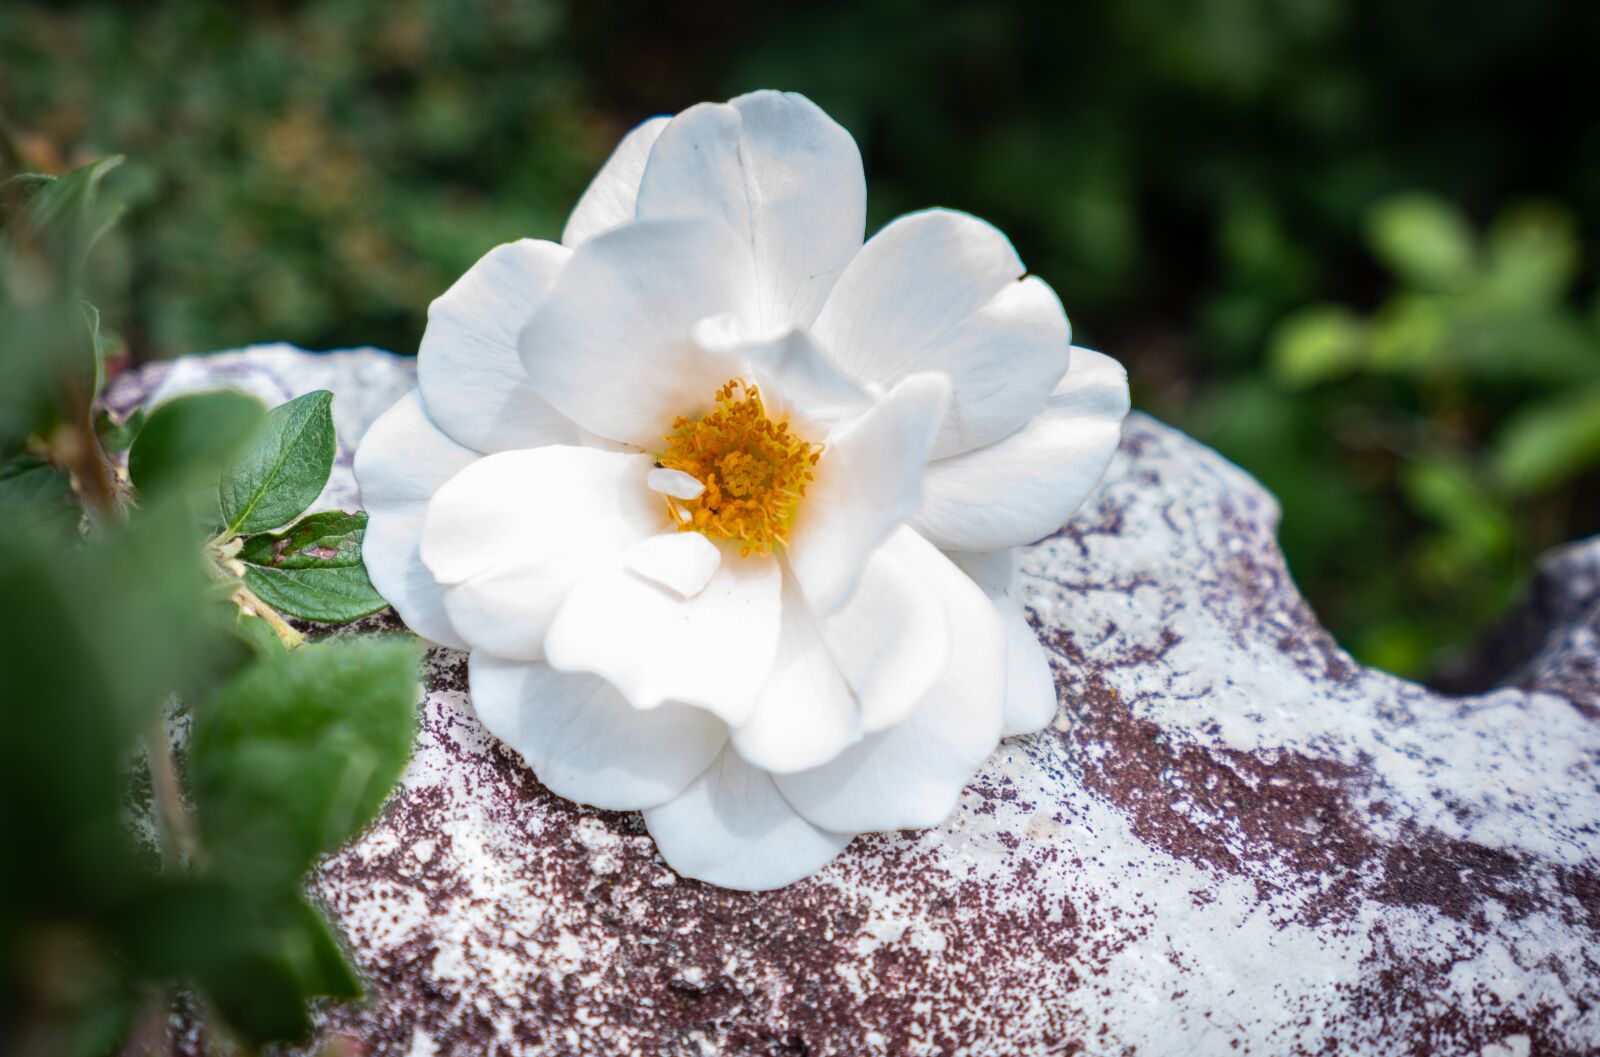 Sony Vario-Tessar T* FE 16-35mm F4 ZA OSS sample photo. Flower, nature, garden photography